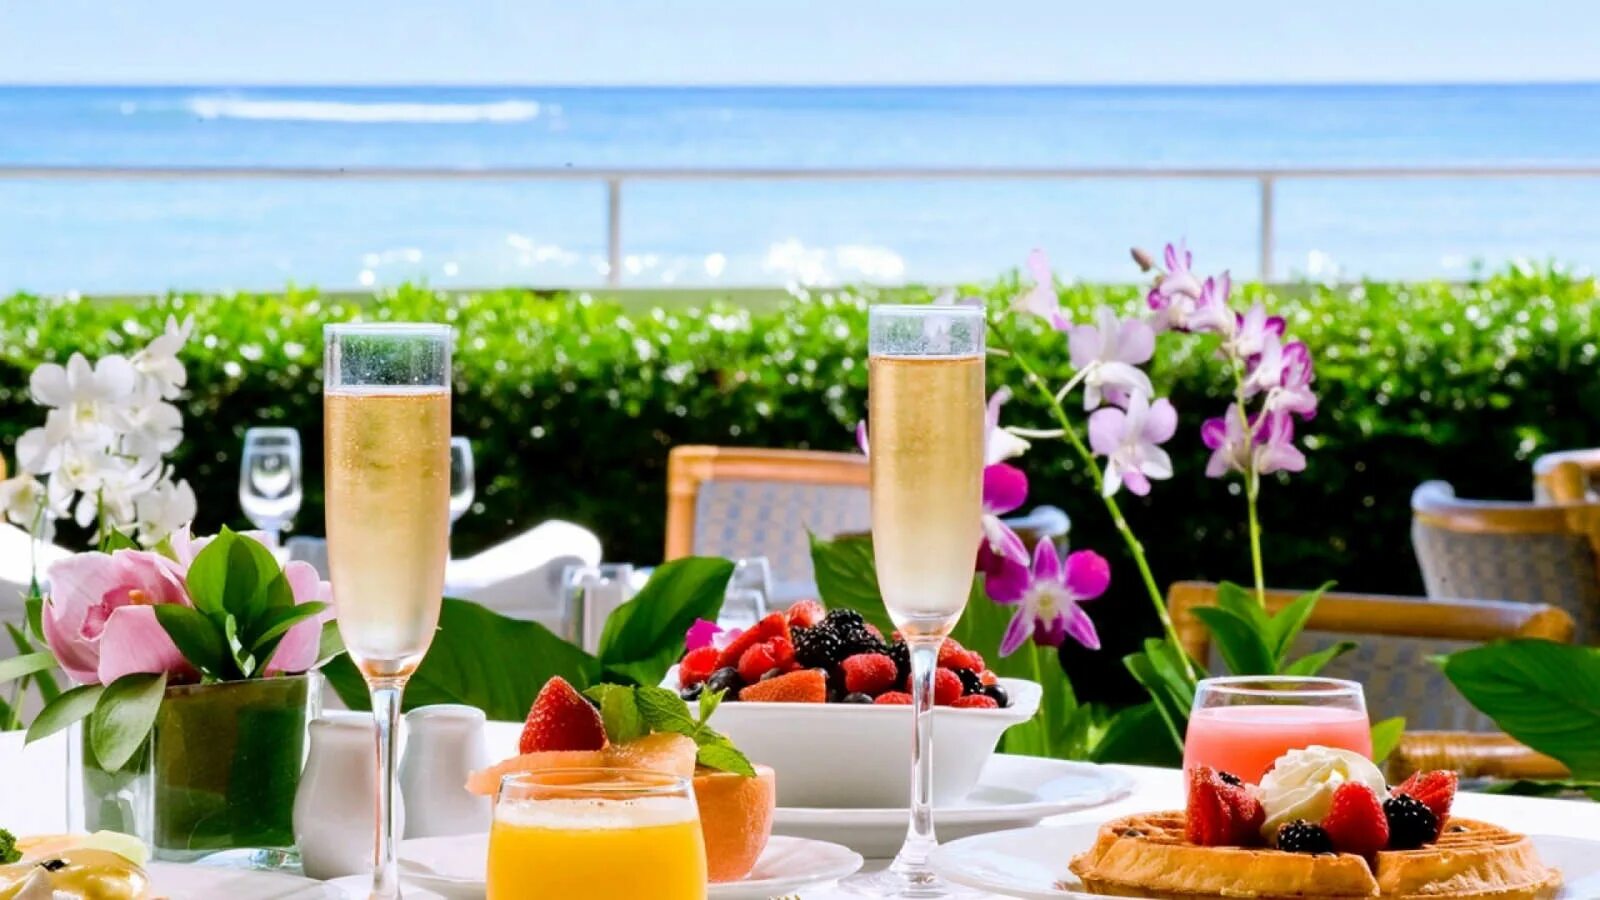 Завтрак у моря. Завтрак на террасе с видом на море. Столик у моря. Роскошный завтрак. Завтрак в летнем кафе